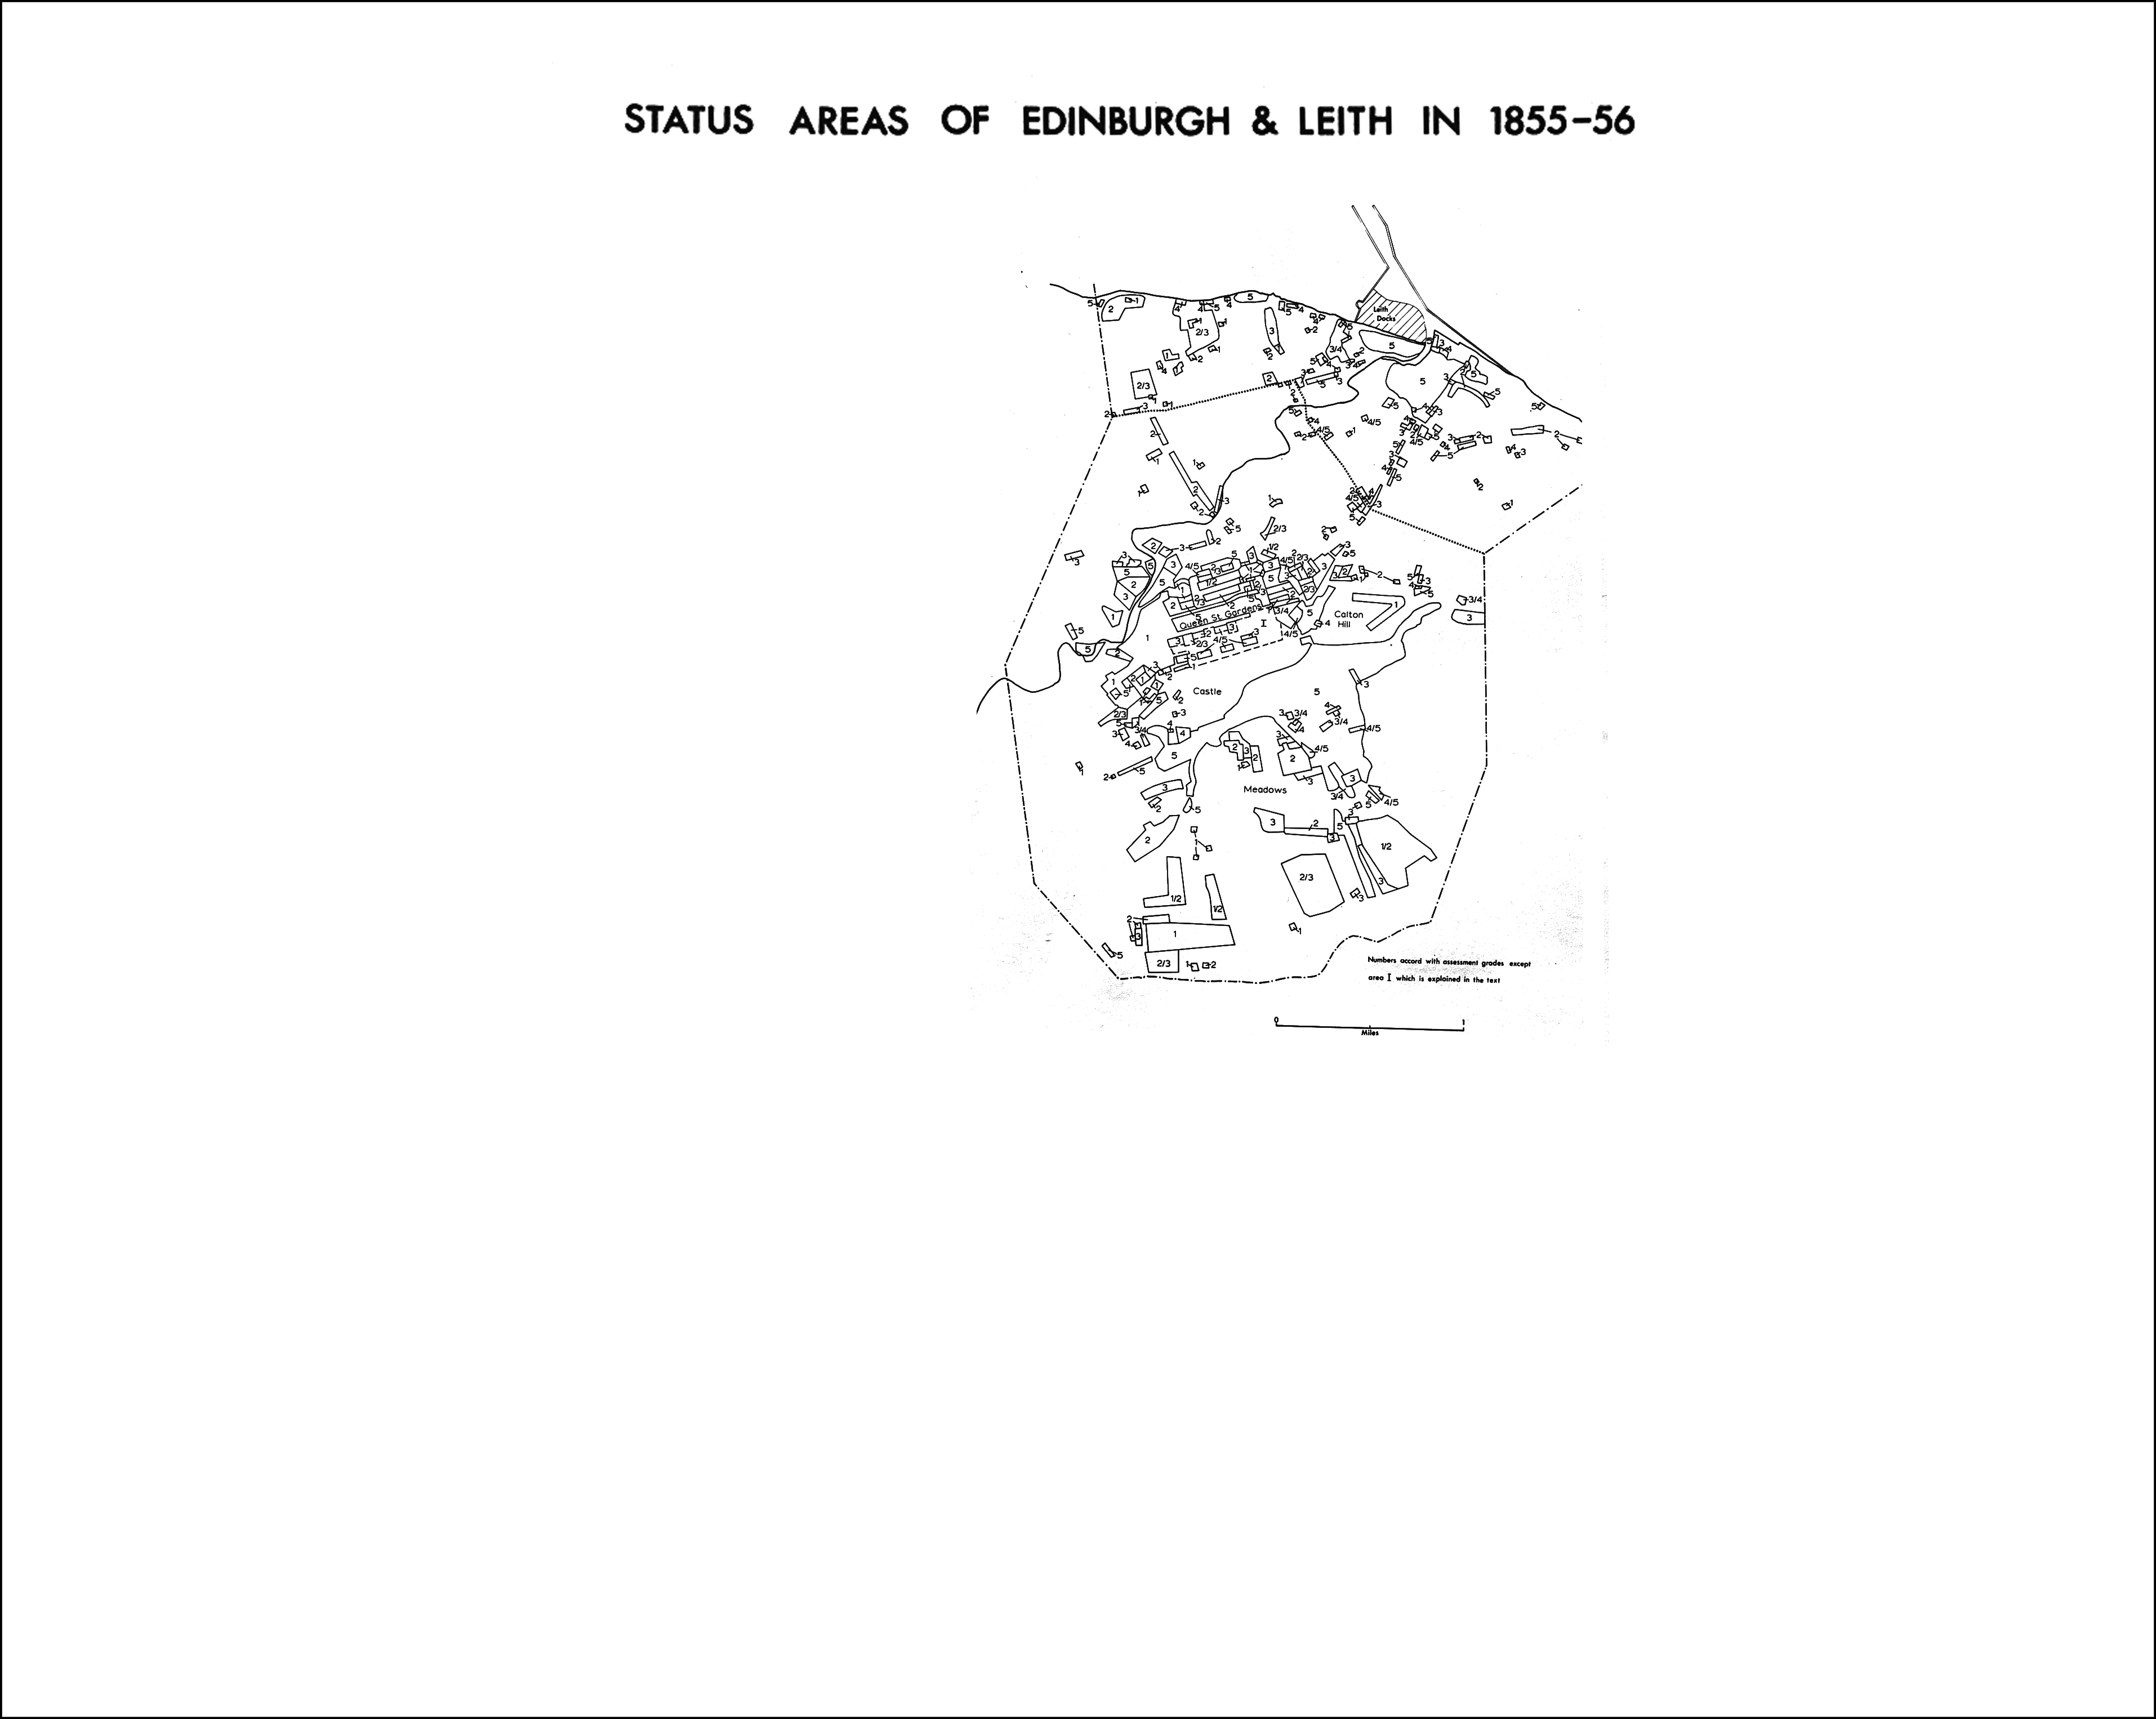 Status areas of Edinburgh & Leith in 1855-56